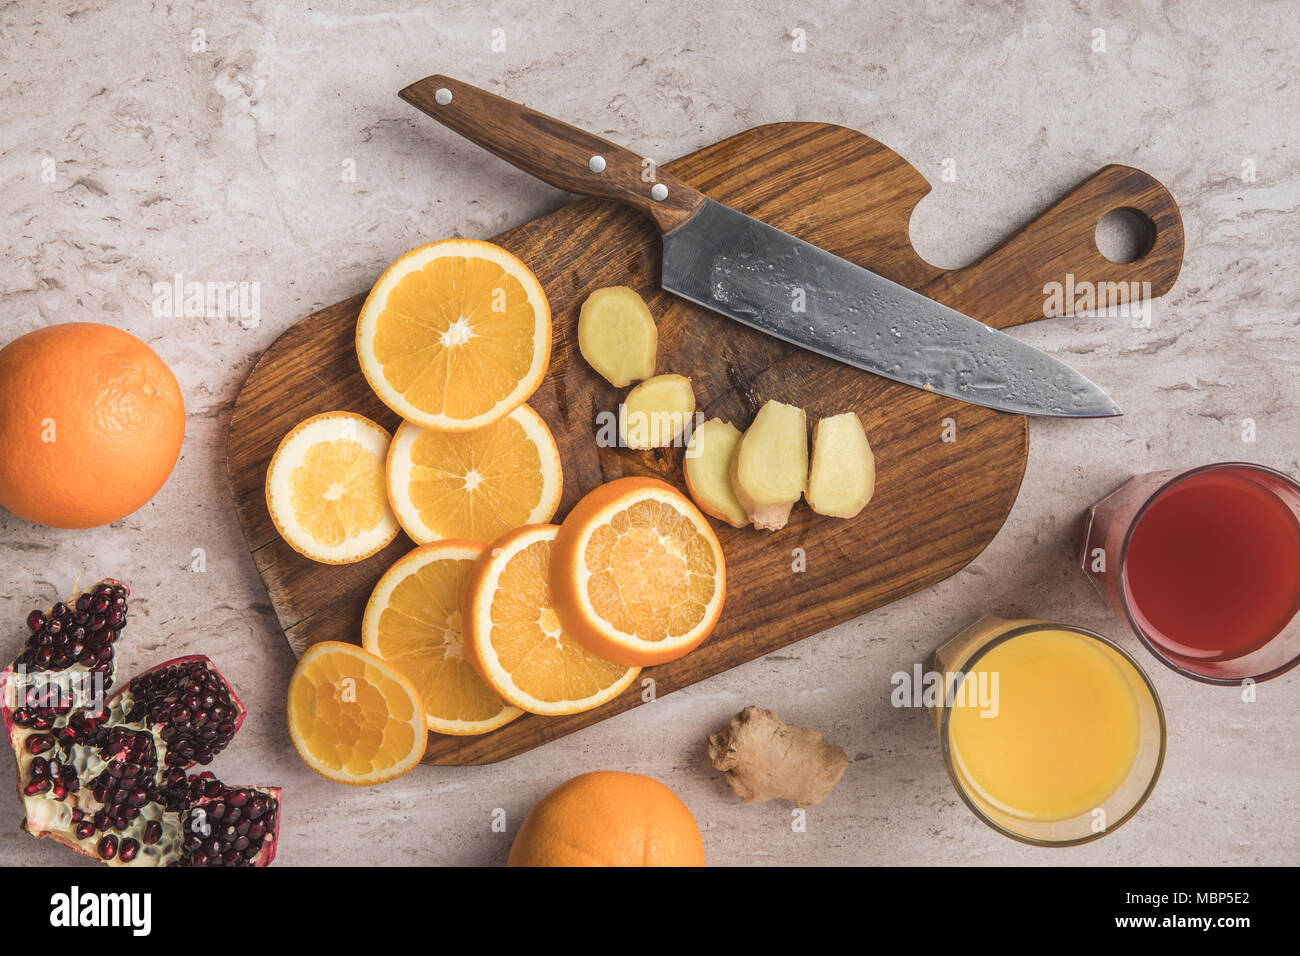 Vue de dessus de couper les oranges, de gingembre et de grenade avec des jus de fruits sur la table Banque D'Images